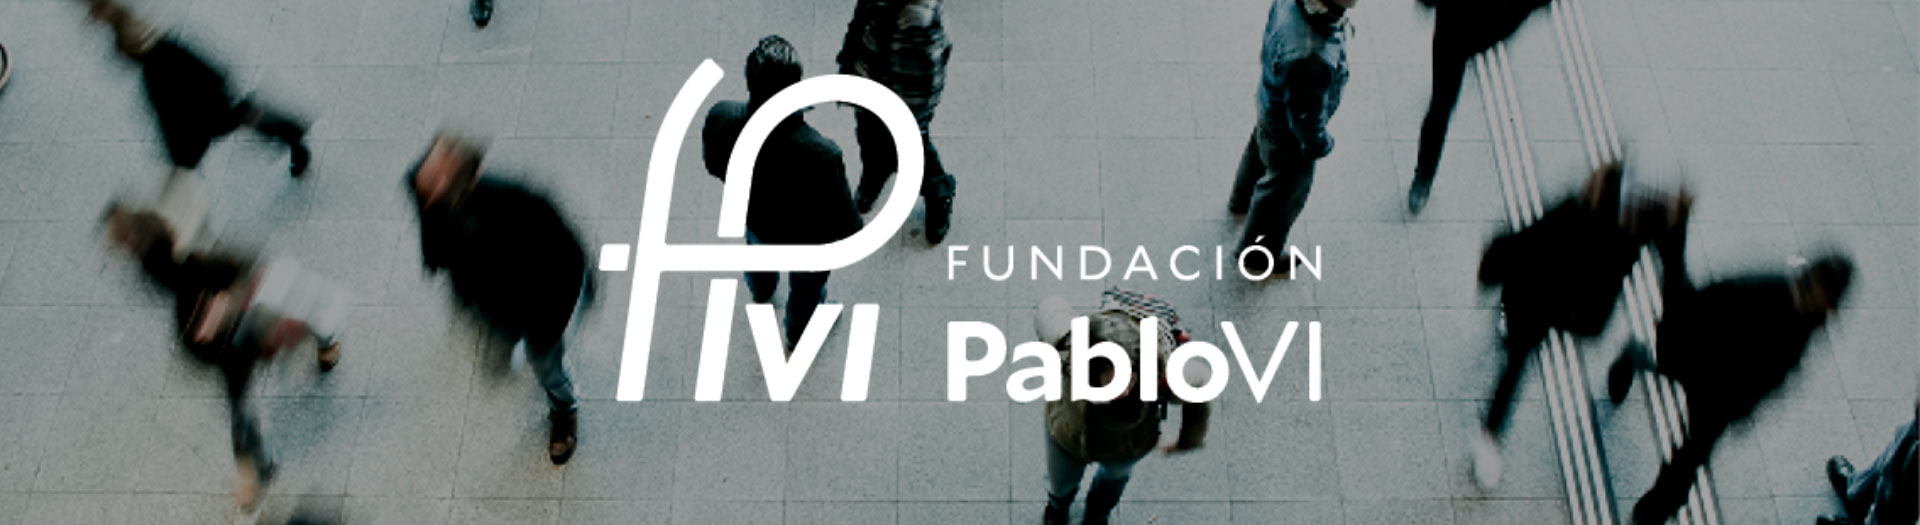 Fundación Pablo VI